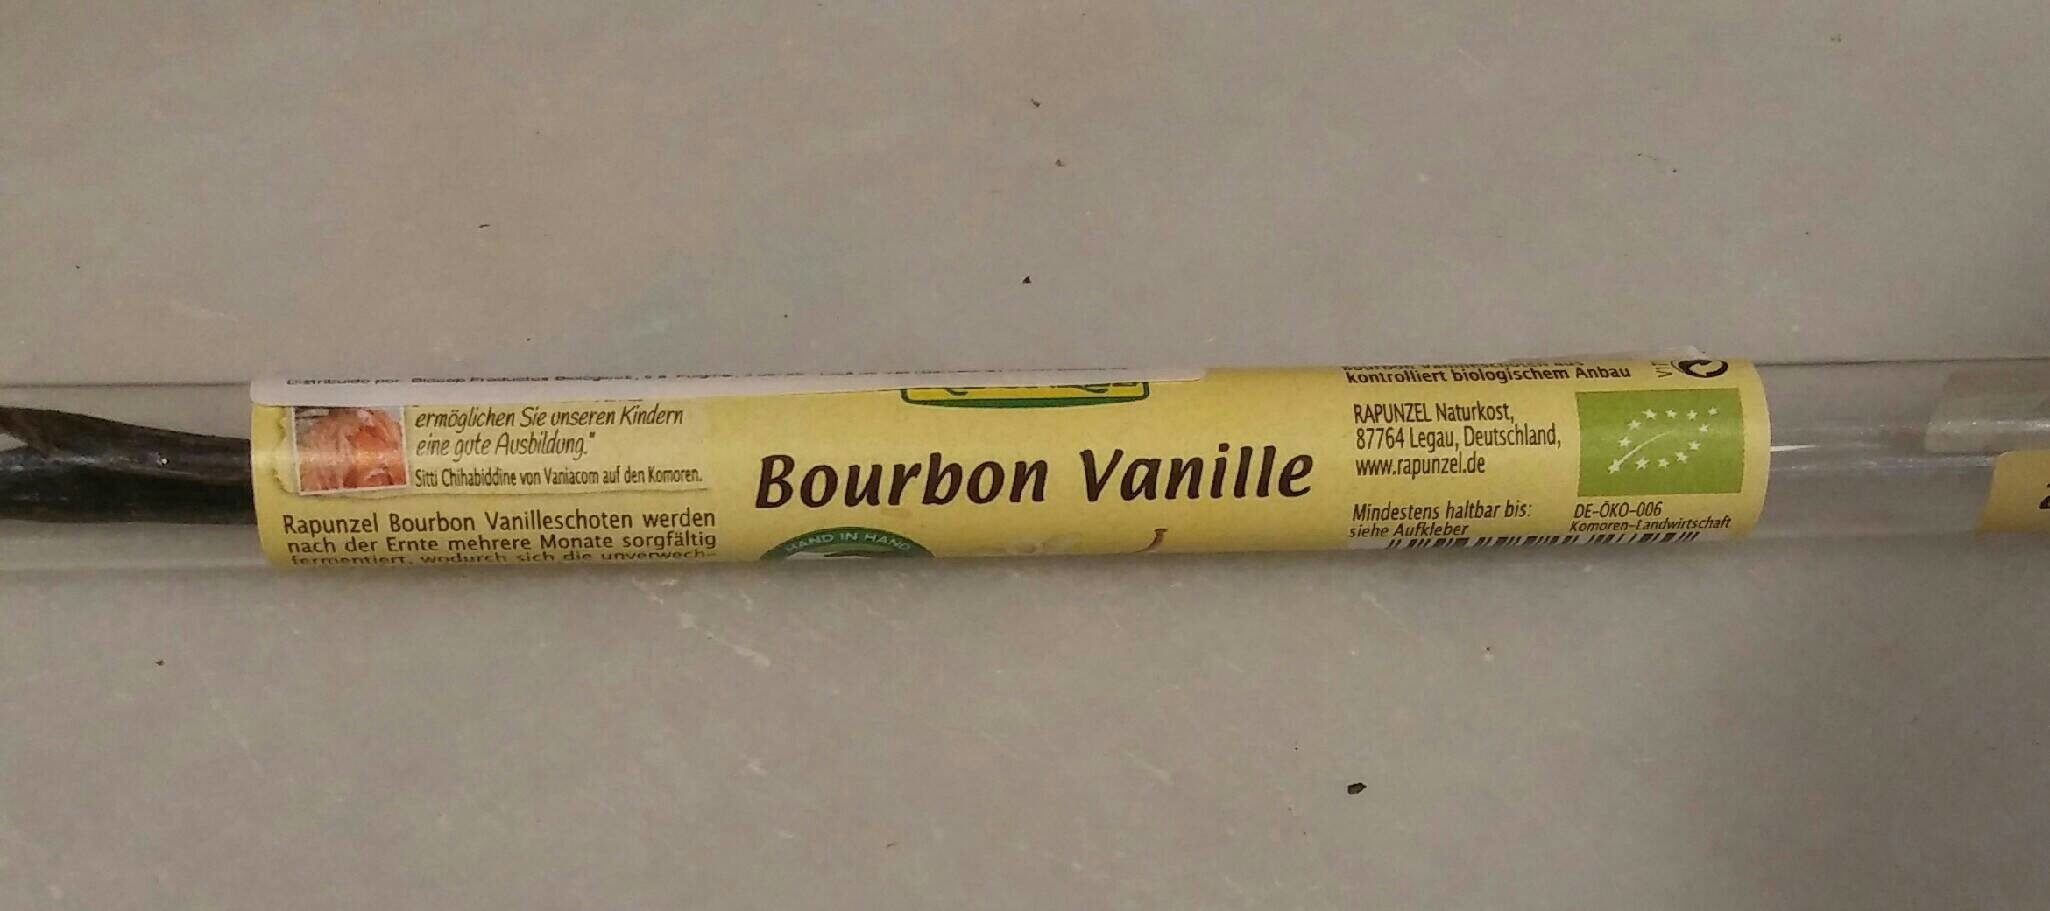 Bourbon Vanille Schoten - Product - es